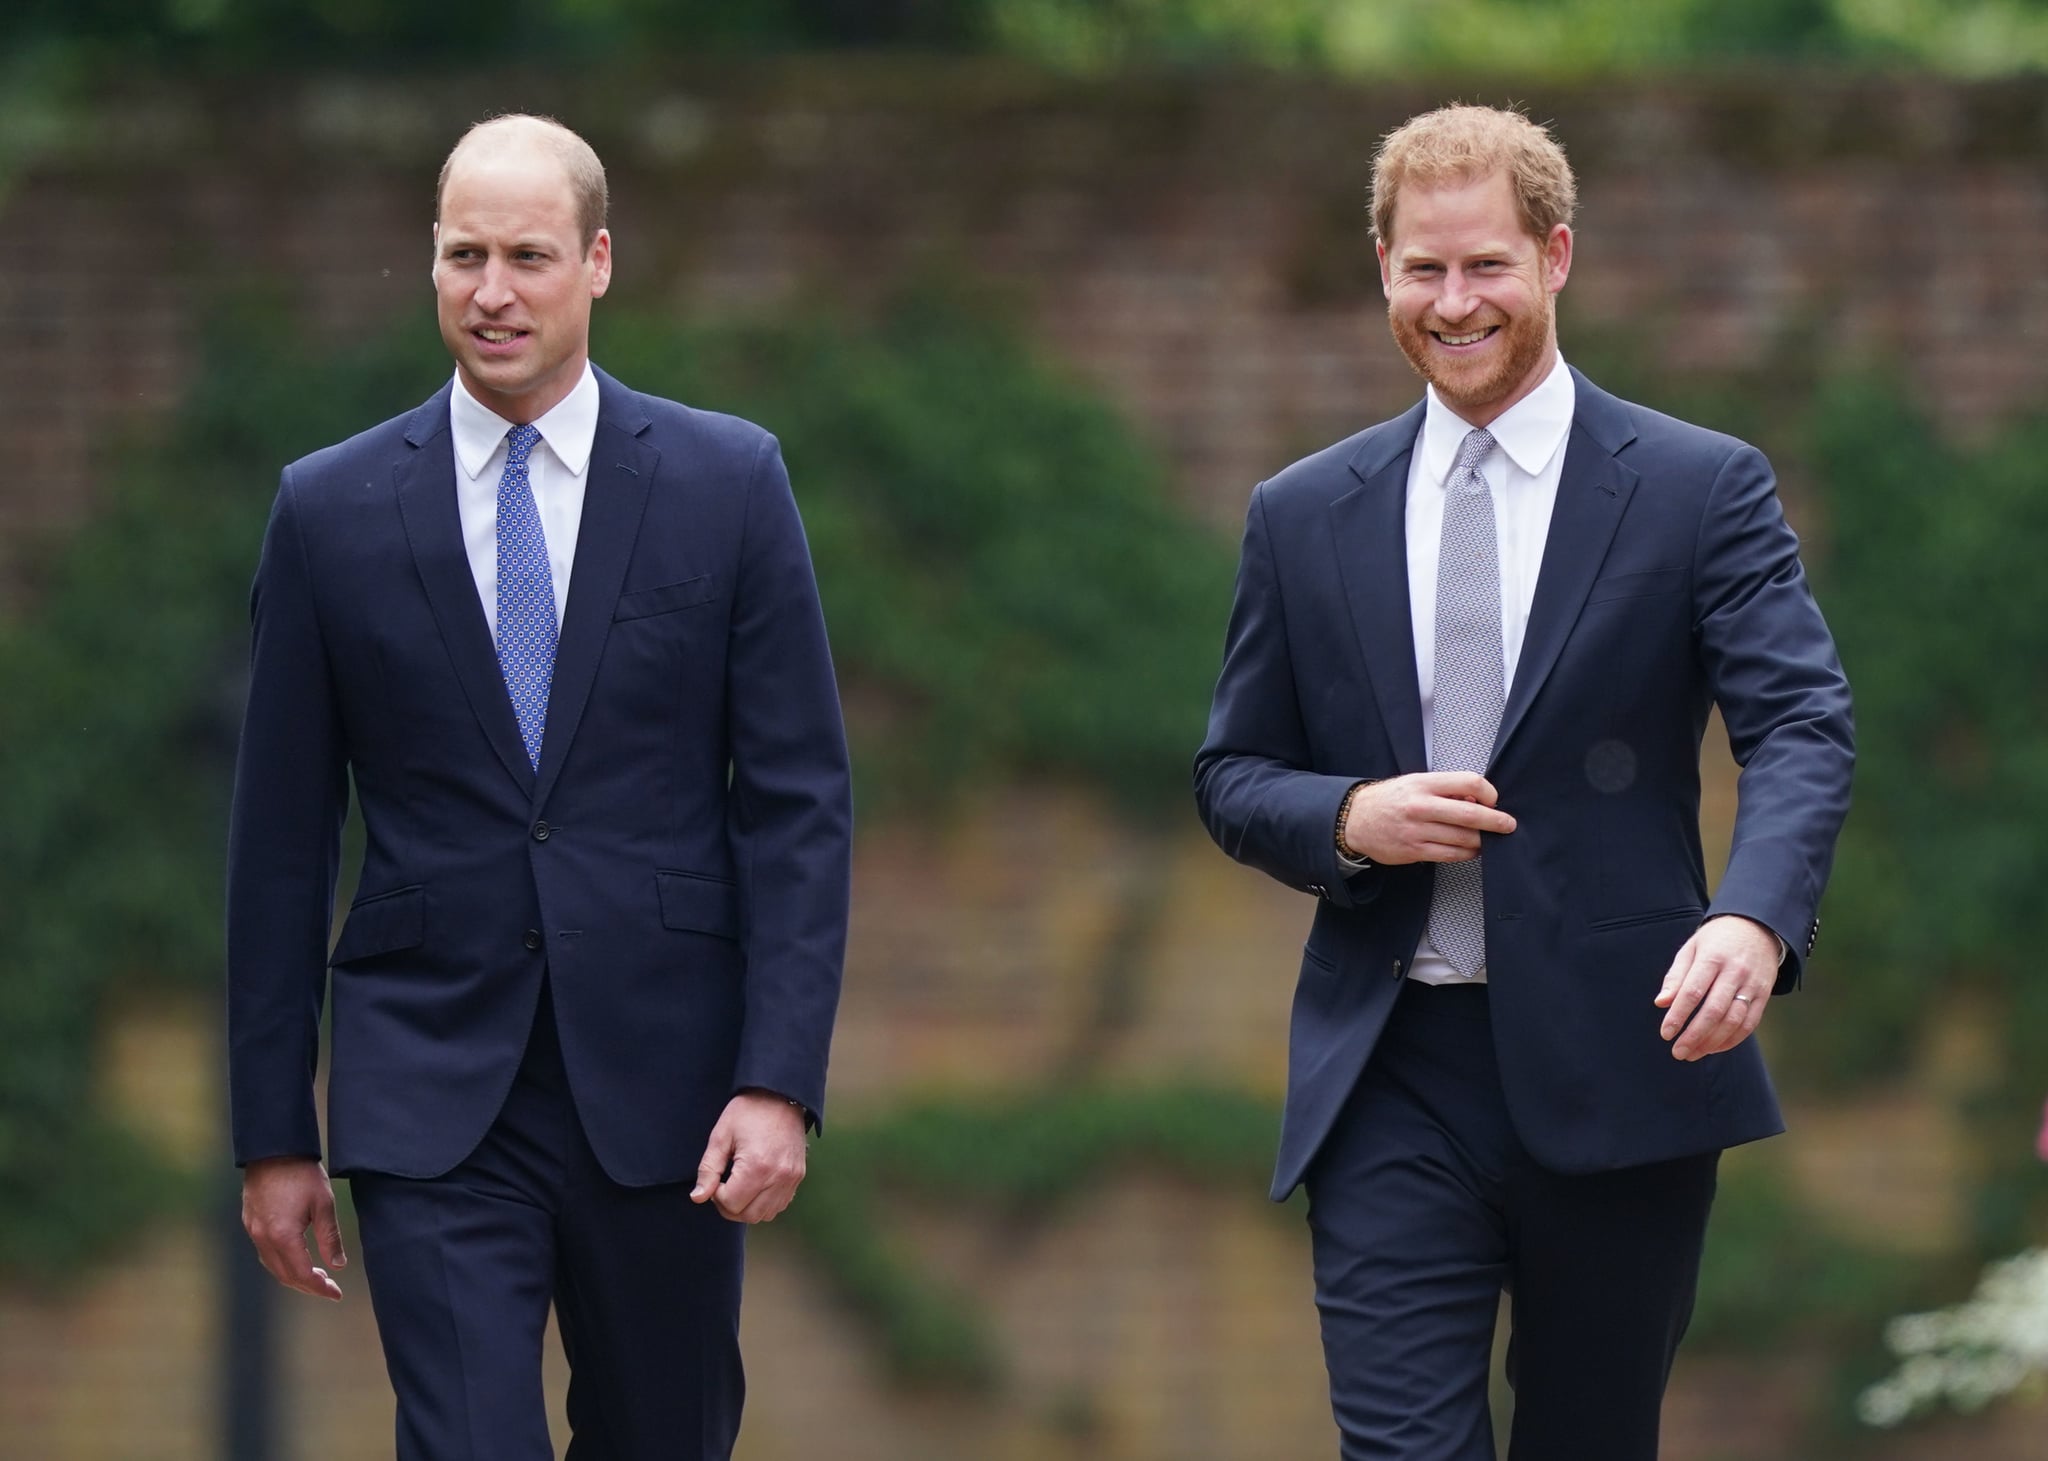 英国伦敦,7月01:威廉王子,剑桥公爵(左)和哈里王子,苏塞克斯公爵雕像揭幕的到达他们委托的母亲戴安娜,威尔士王妃,在肯辛顿宫的下沉花园,什么她的60岁生日7月1日,2021年在伦敦,英国。今天是戴安娜王妃的60岁生日,1997年去世。今天在这里举行的一个仪式上,她的儿子威廉王子和哈里王子的剑桥公爵和公爵苏塞克斯分别将推出雕像在她的记忆中。(图片由Yui Mok WPA池/盖蒂图片社)